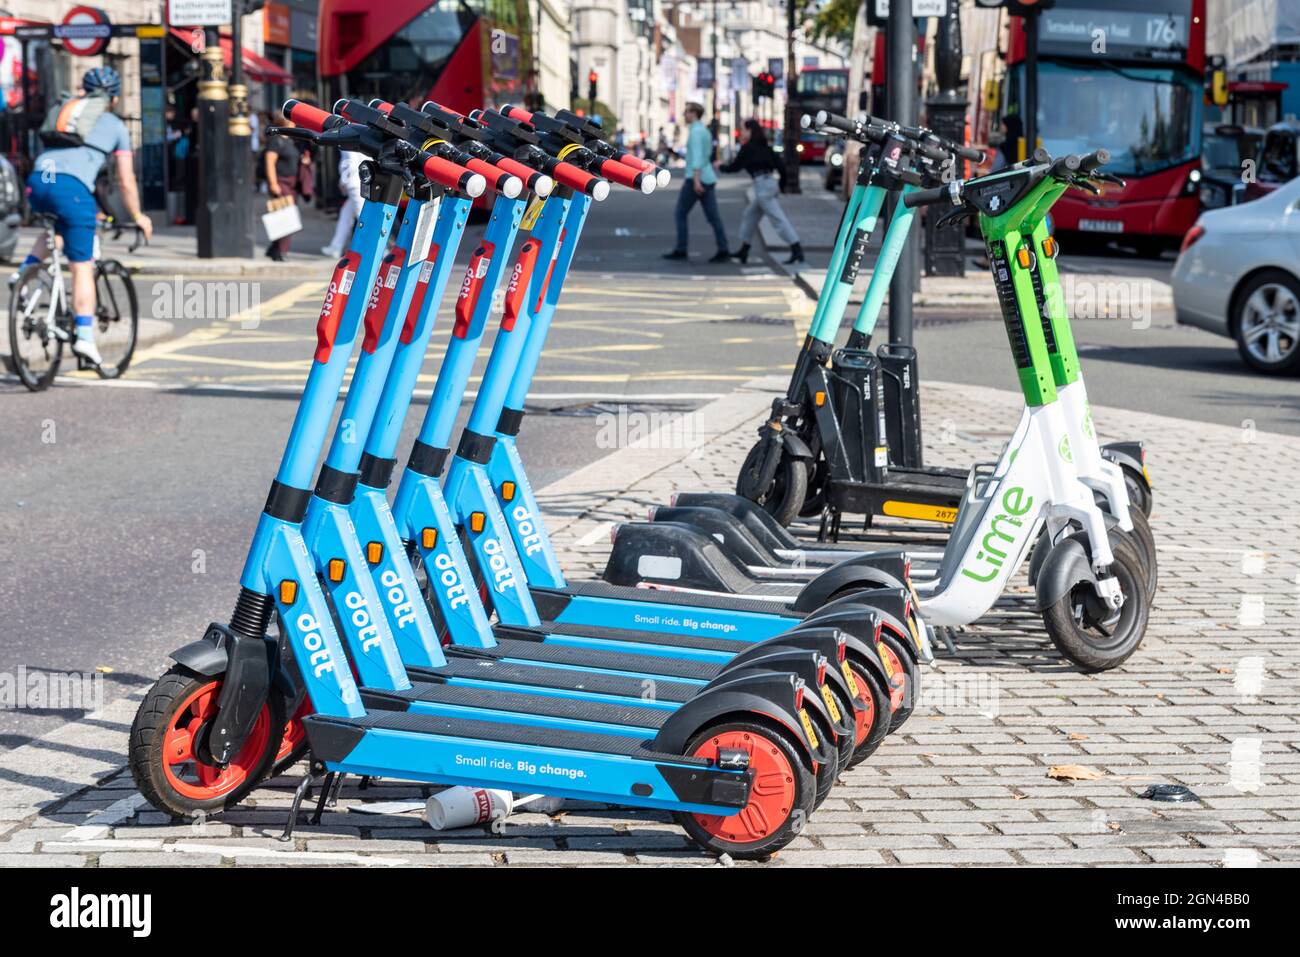 Lime et Dott e scooters à louer à Londres, Royaume-Uni, avec bus et  voiture. Cycliste et personnes marchant. Ville animée avec scooters  électriques dans la rue Photo Stock - Alamy